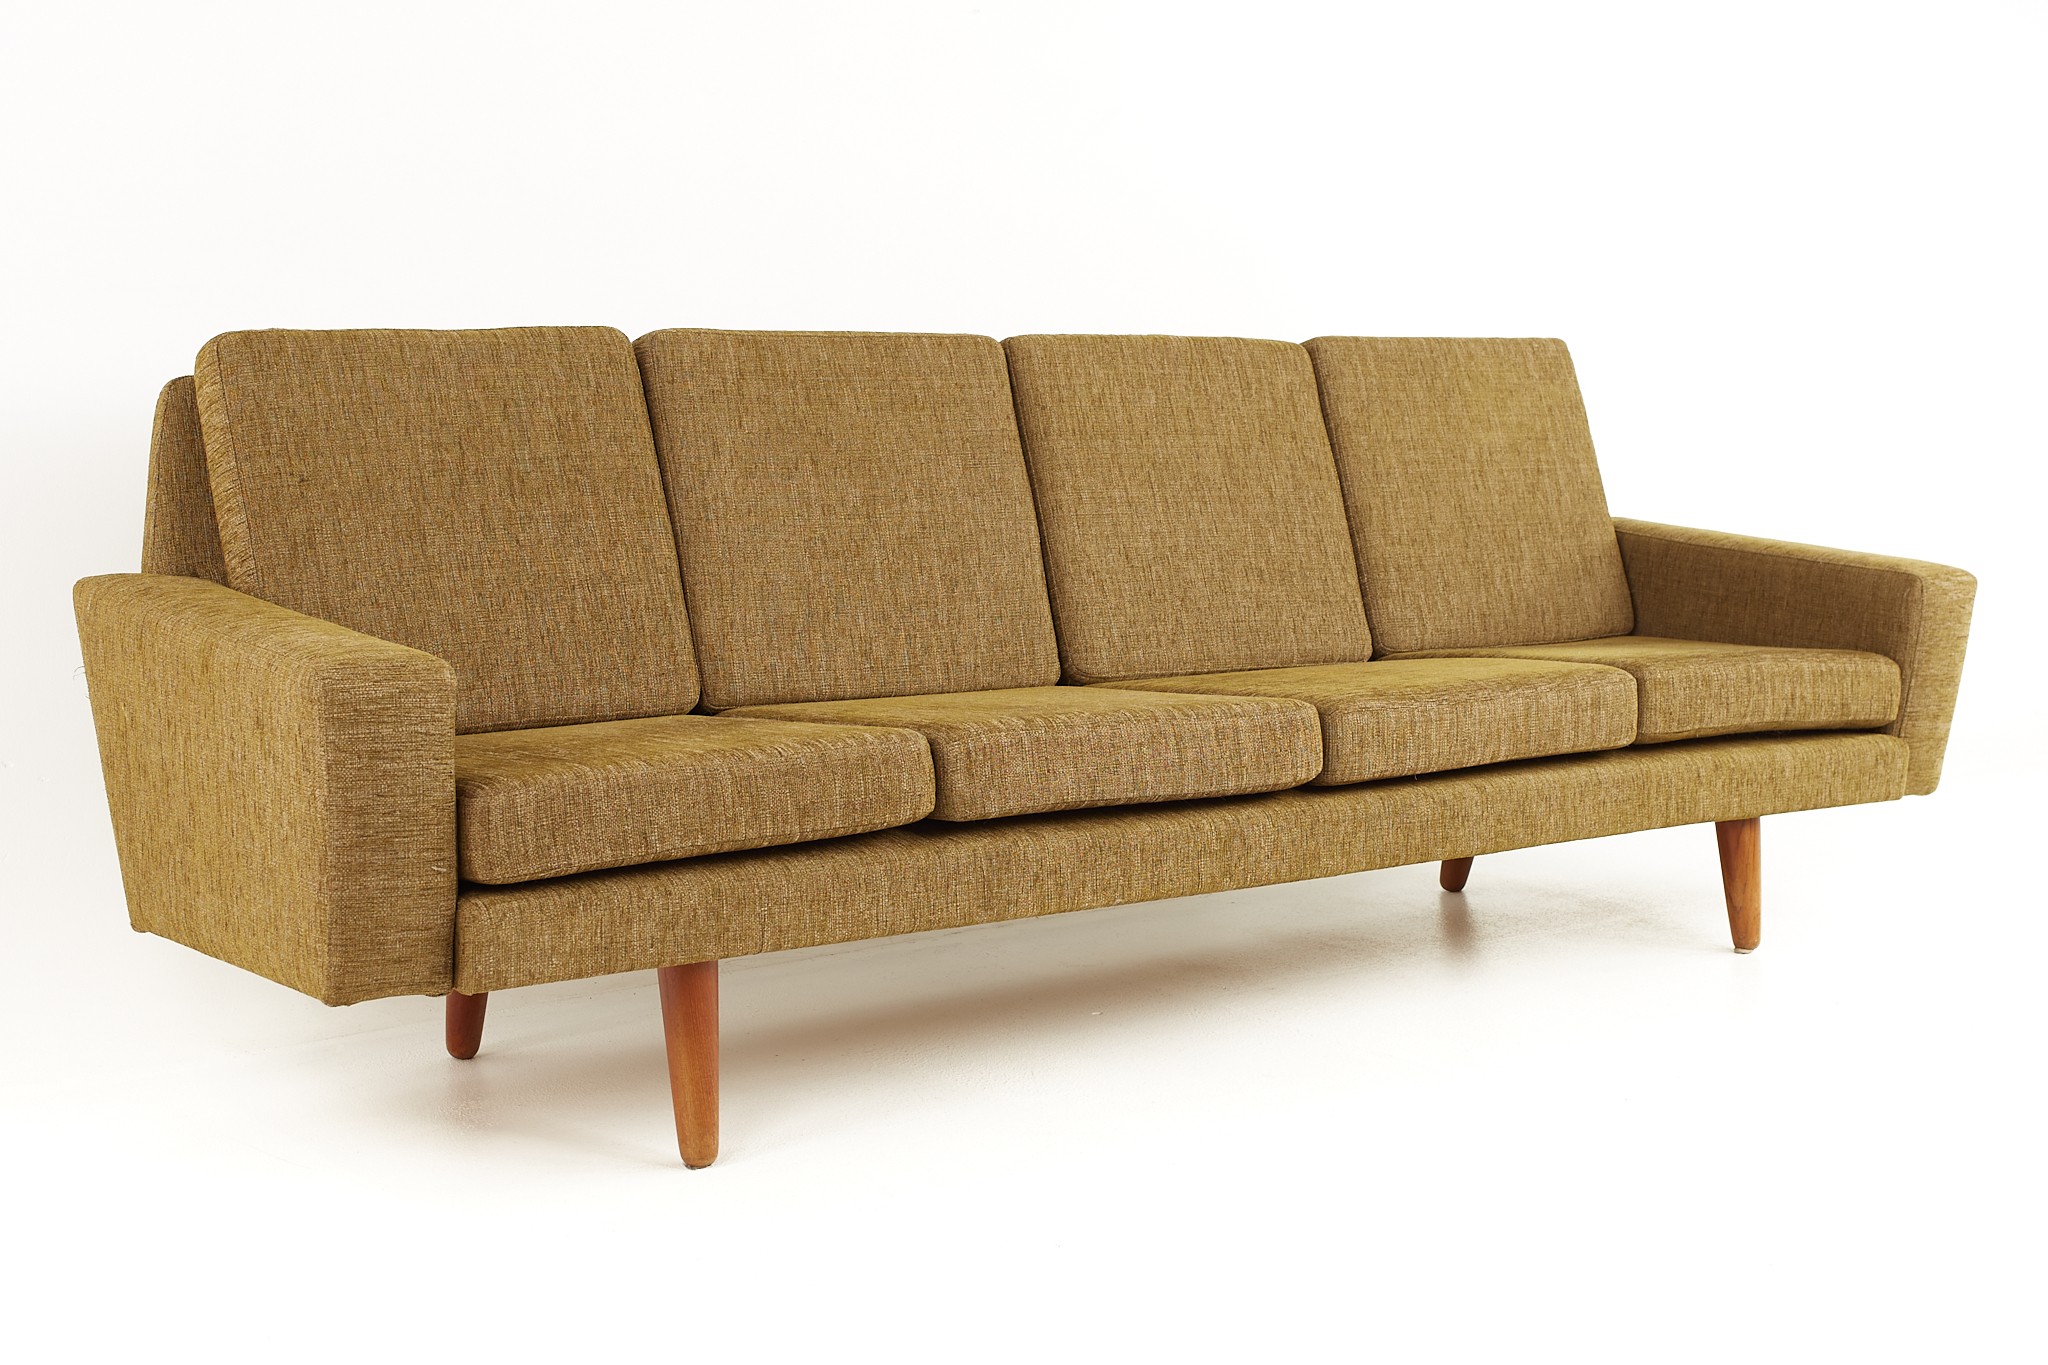 Illum Wikkelso Style Mid Century Danish Teak Sofa